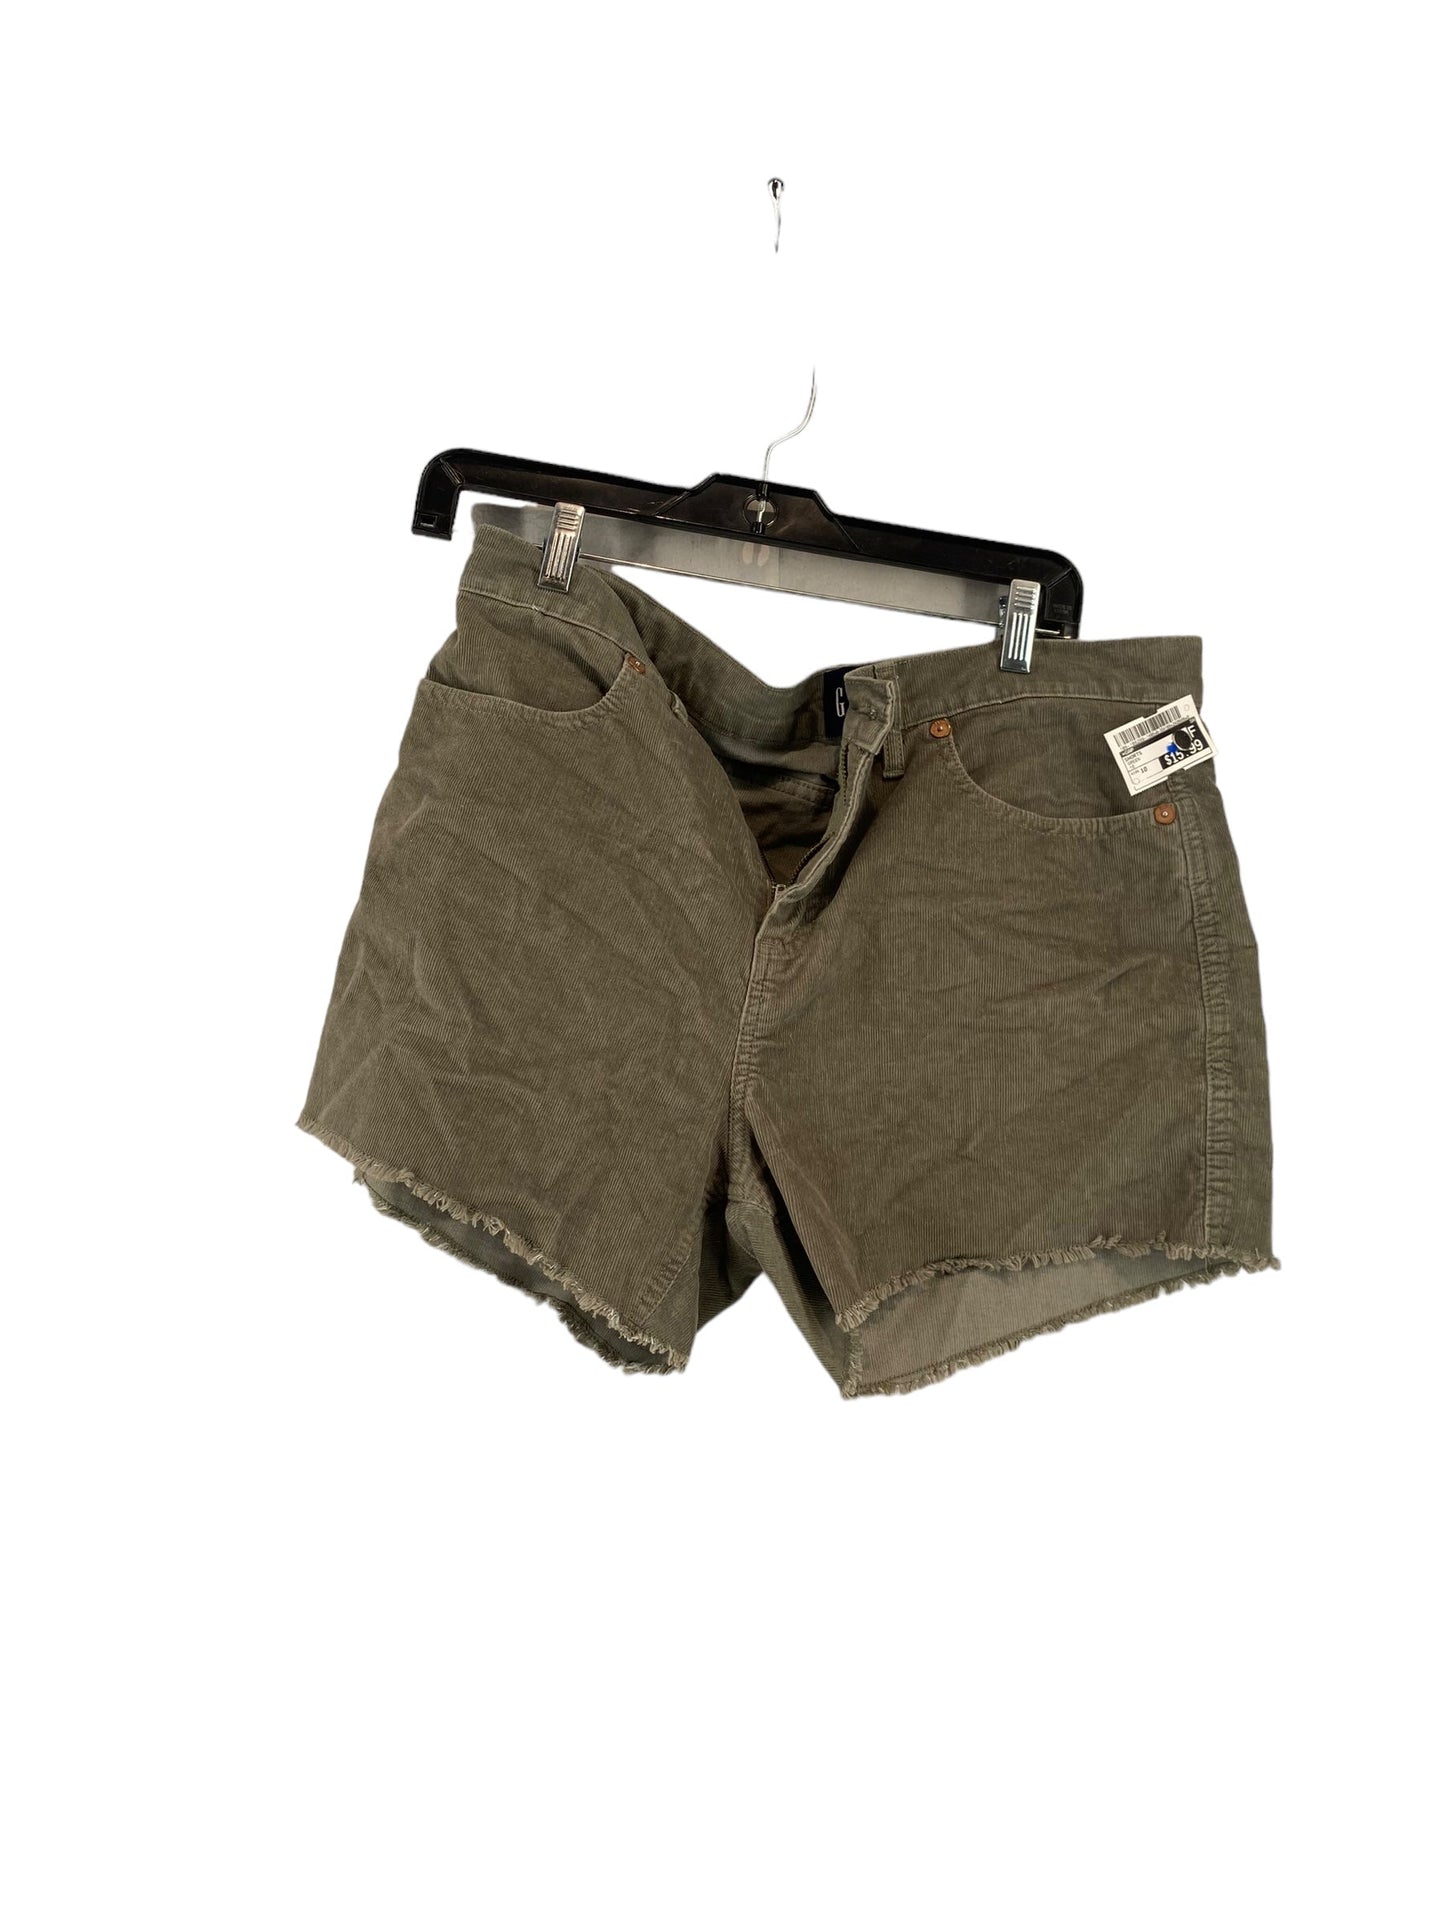 Green Shorts Gap, Size 10